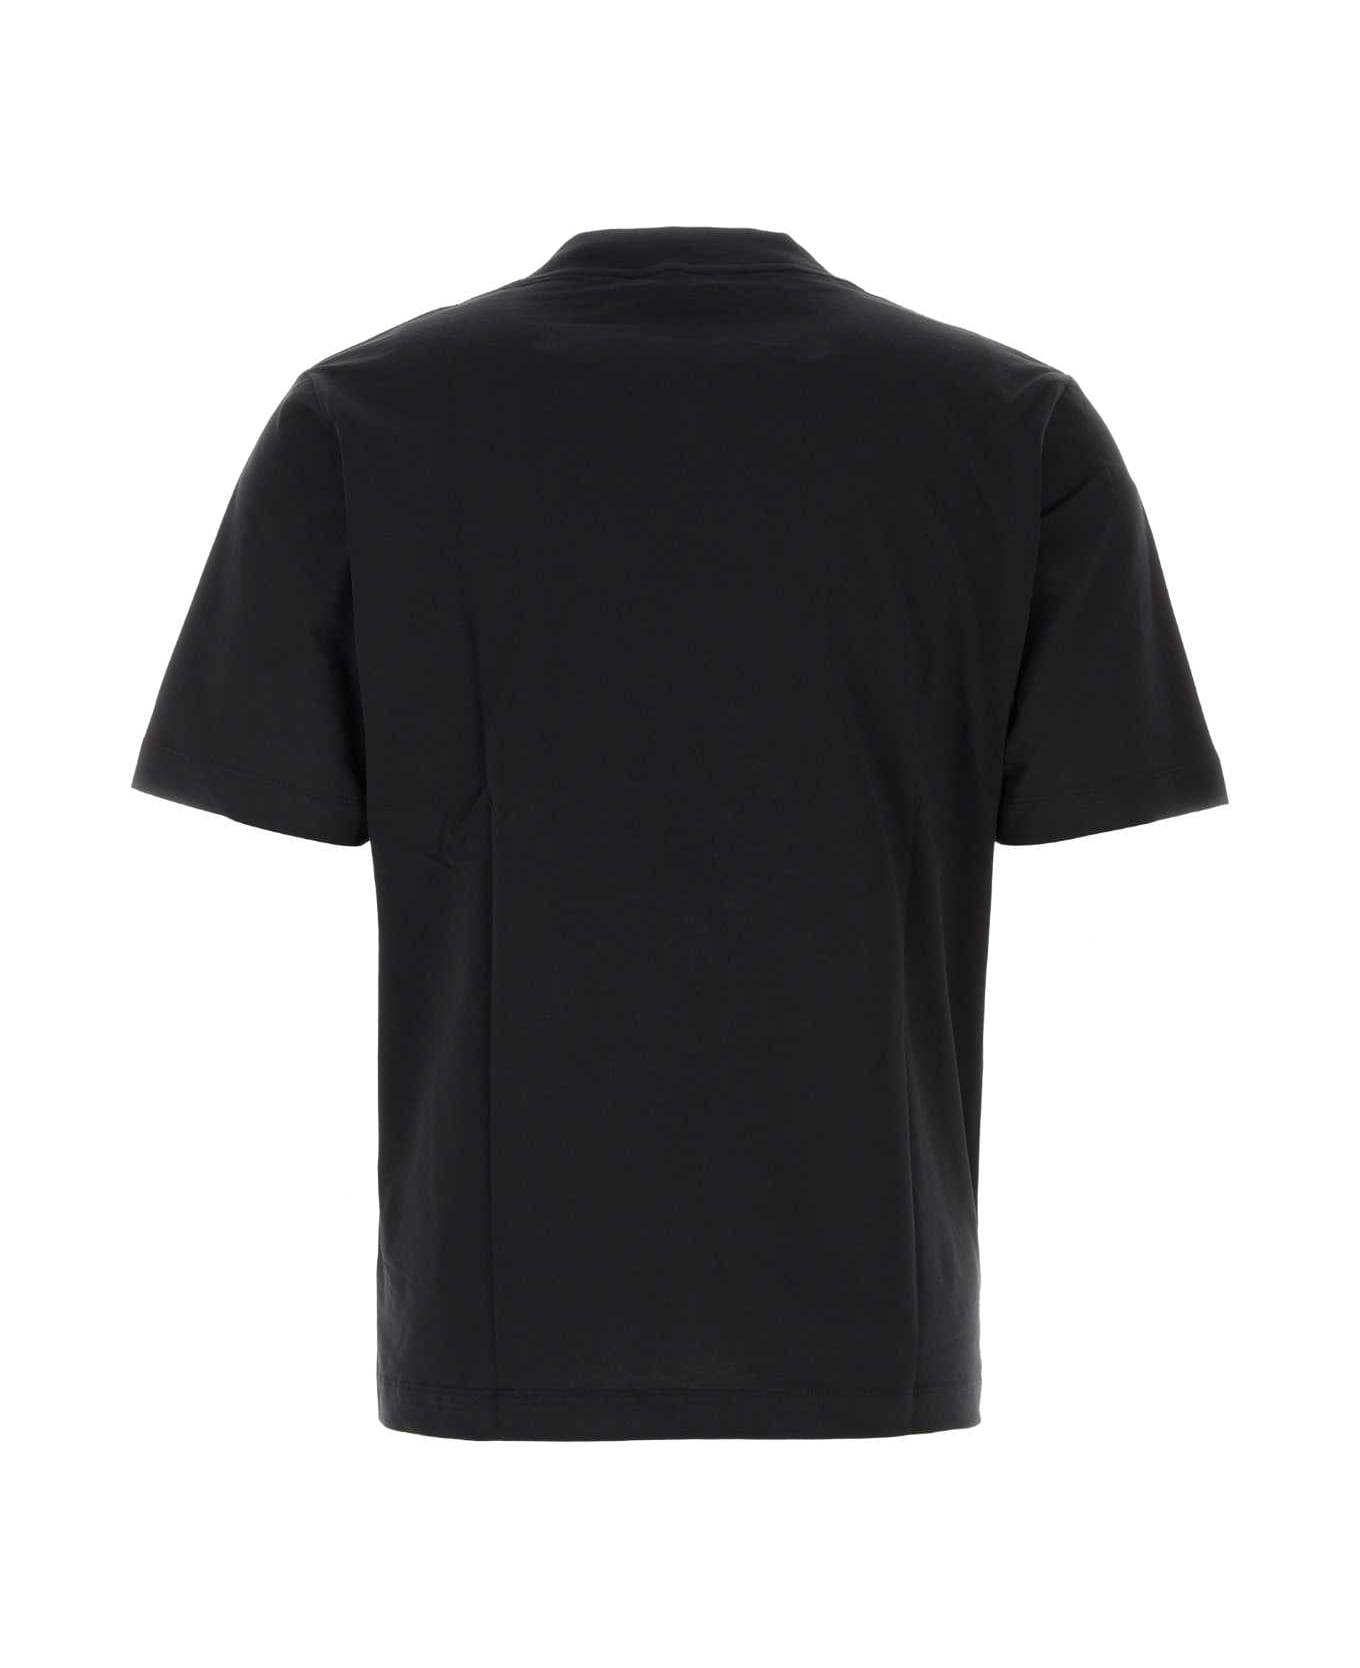 Études Black Cotton T-shirt - BLACK シャツ